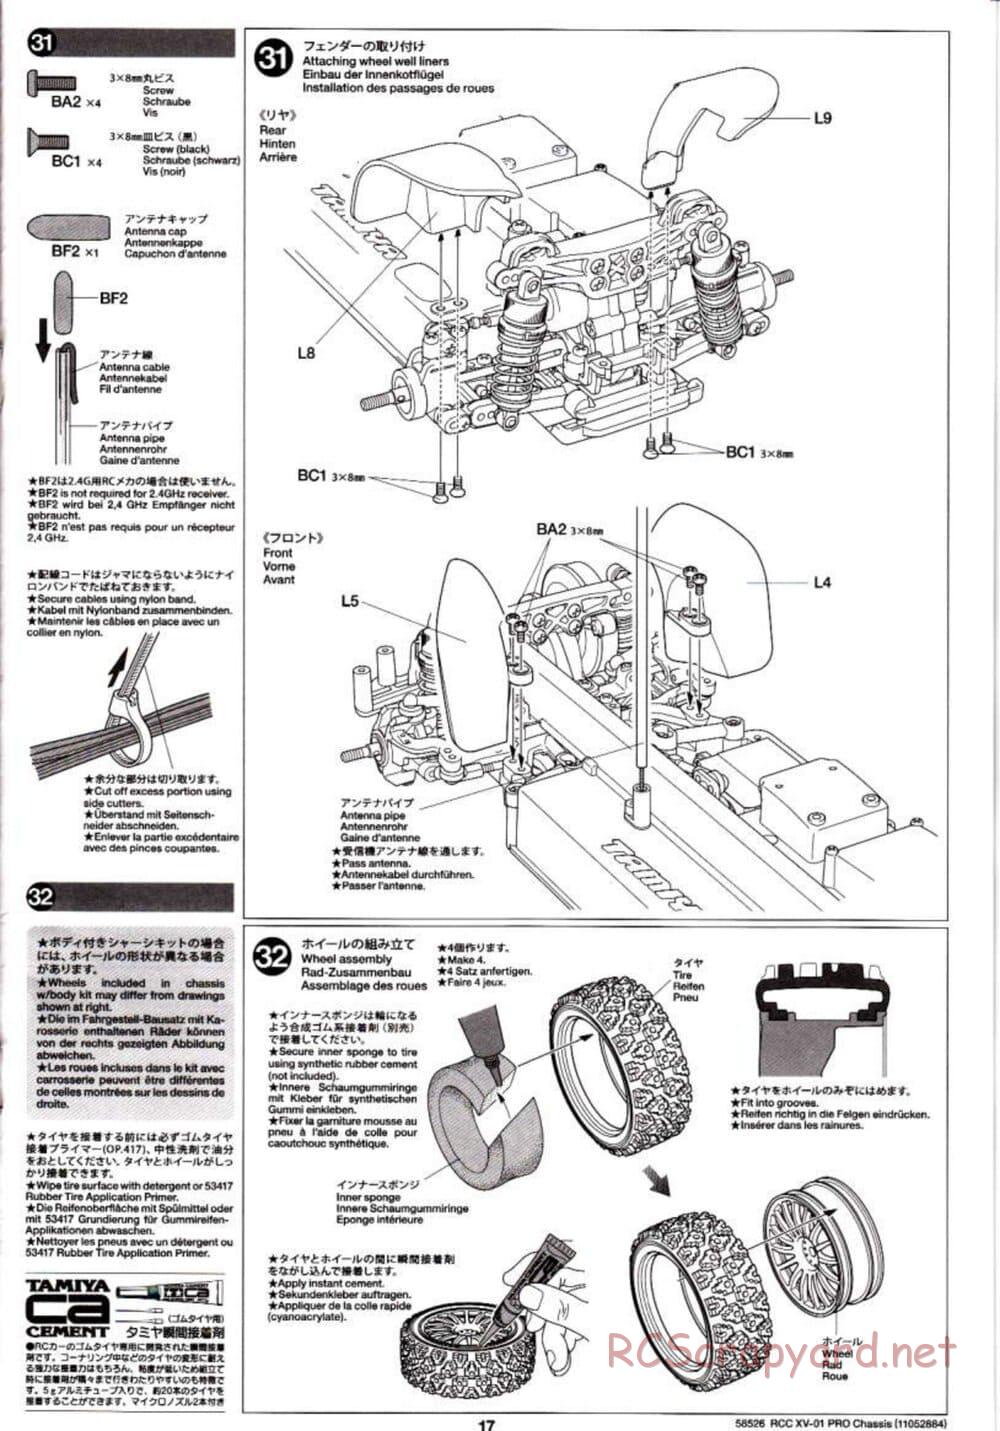 Tamiya - XV-01 PRO Chassis - Manual - Page 17